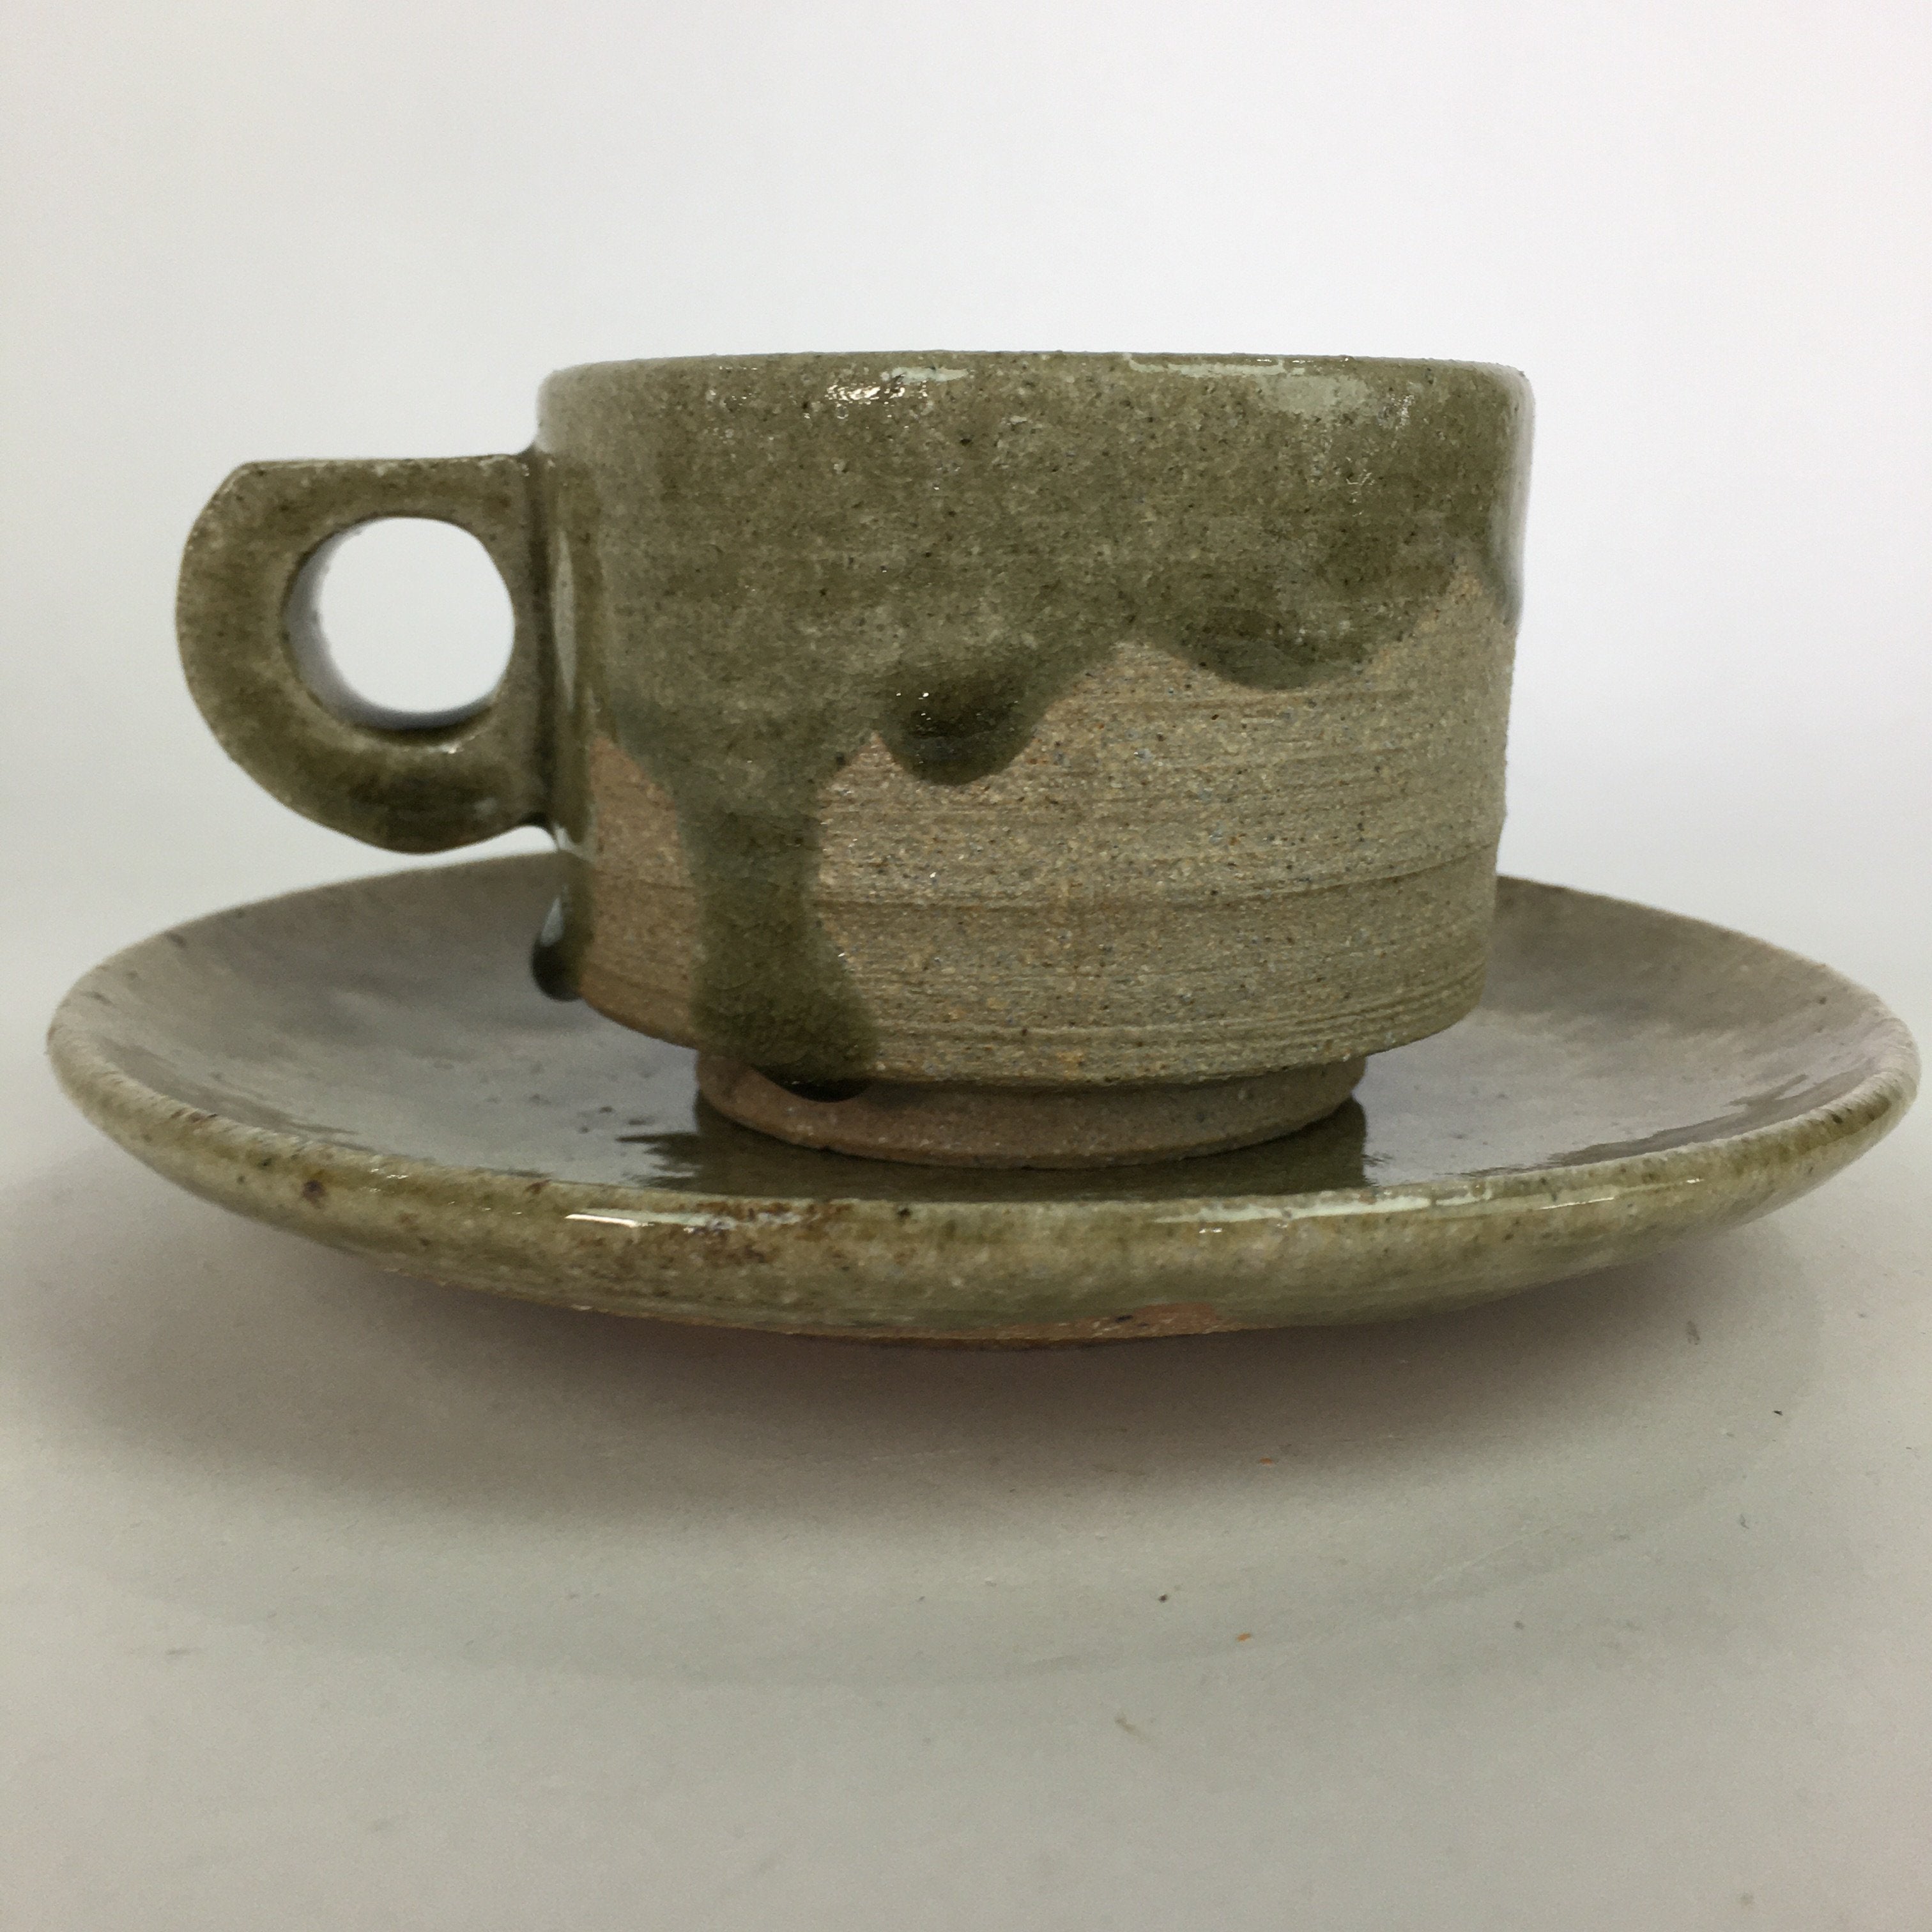 Japanese Ceramic Igayaki Teacup Mug Saucer Vtg Cup Plate Set Green Glaze PP573